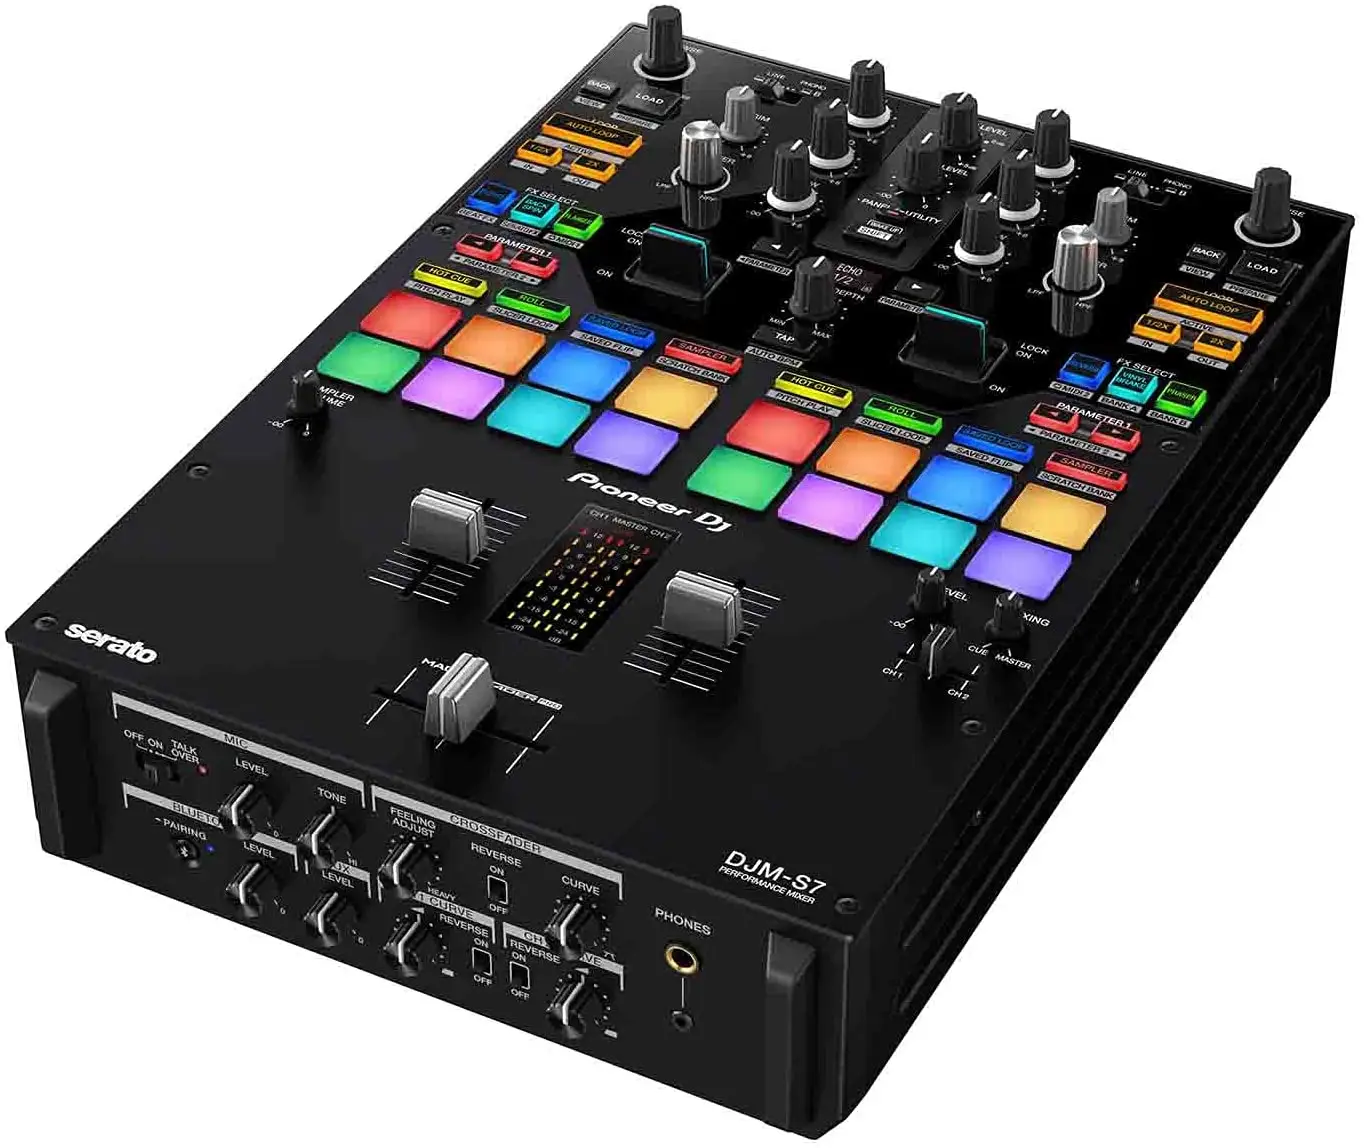 Melhor comércio para novo pioneer dj DJM-S7 - 2 canais dj mixer com duas entradas usb de áudio, 16 desempenhos